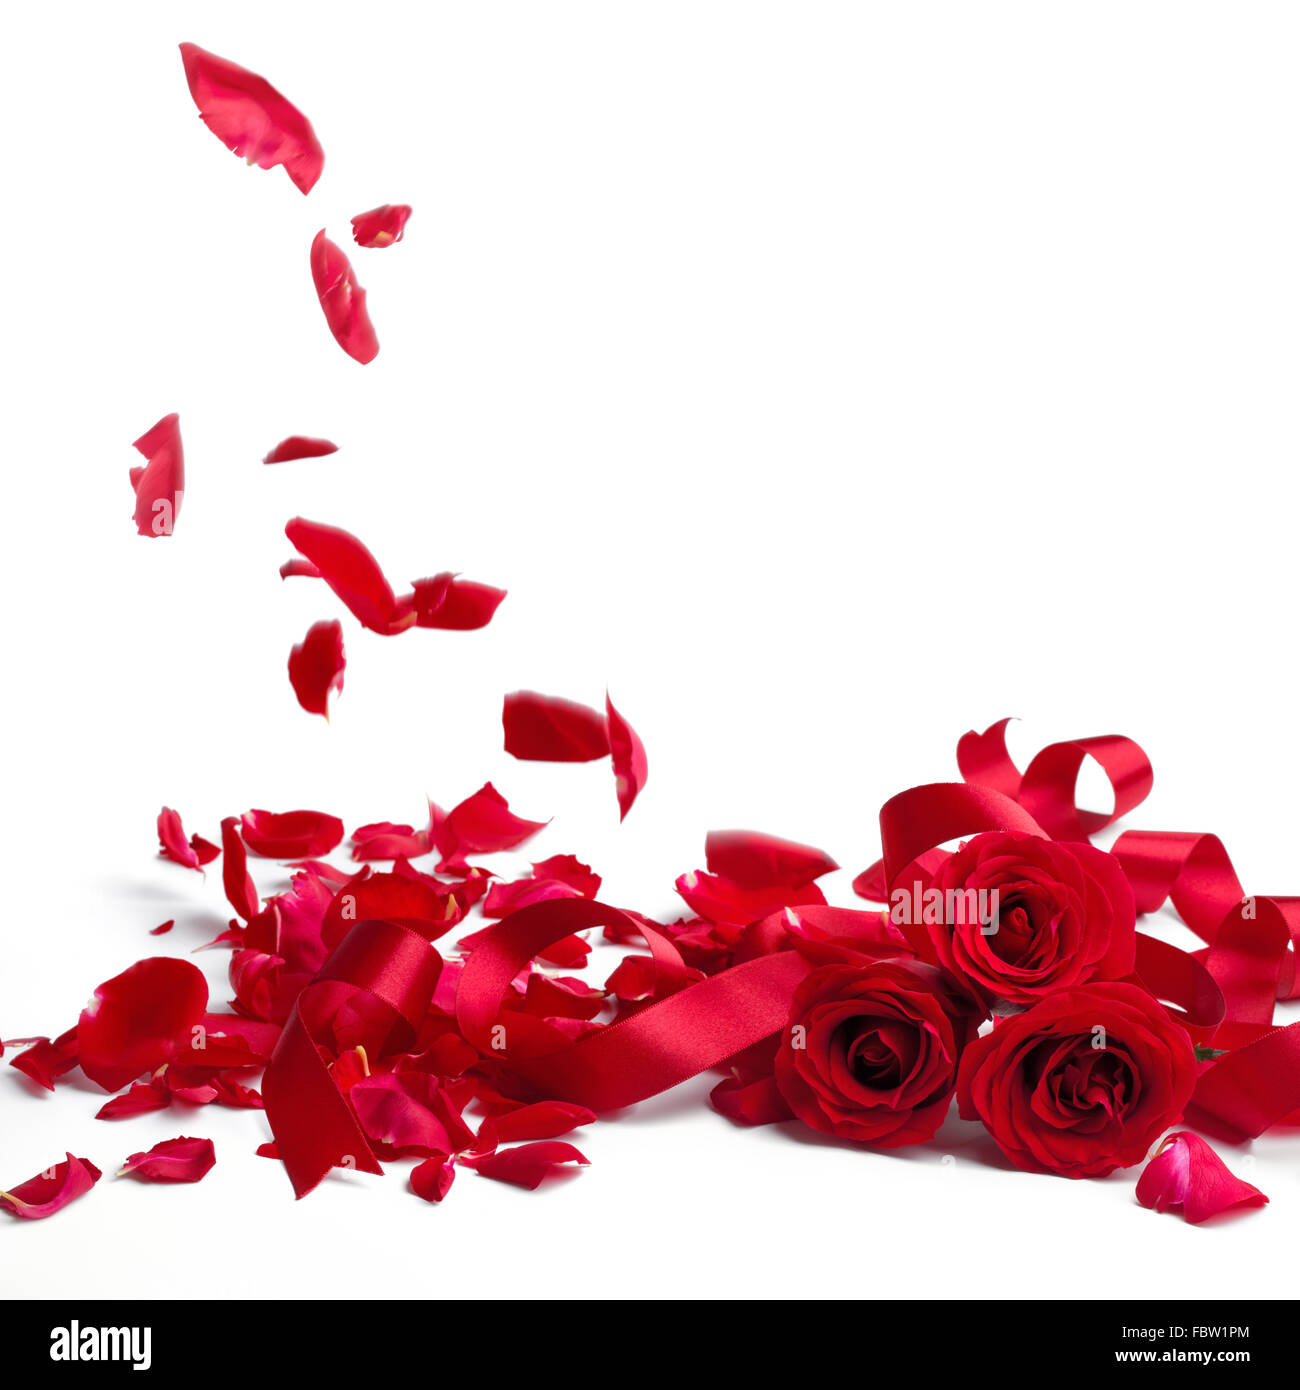 Rote Rosen und Rosenblätter auf weißem Hintergrund, Valentinstag-Konzept. Stockfoto